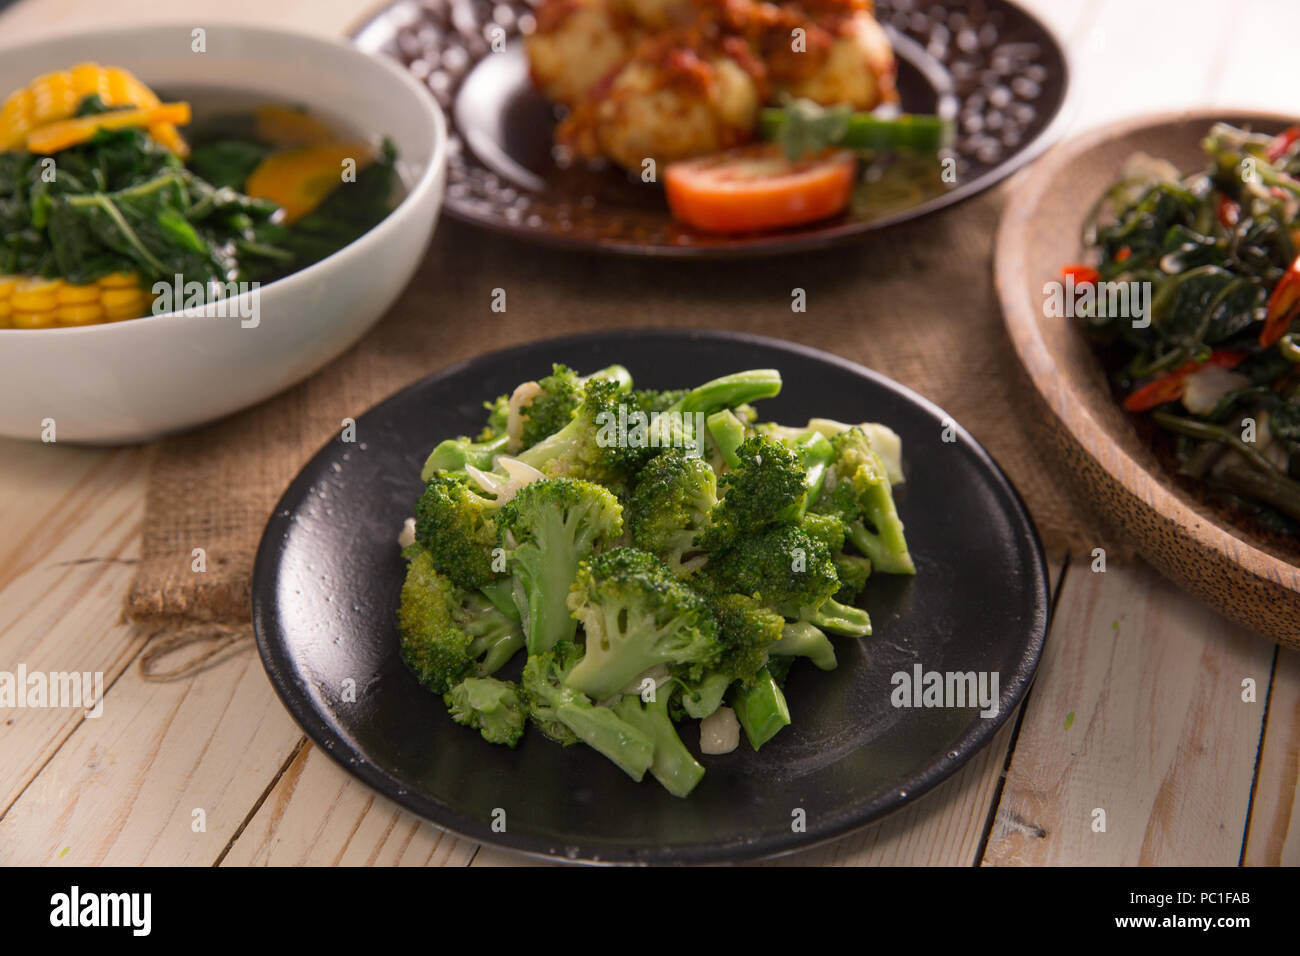 Stir fried broccoli or cah brokoli Stock Photo